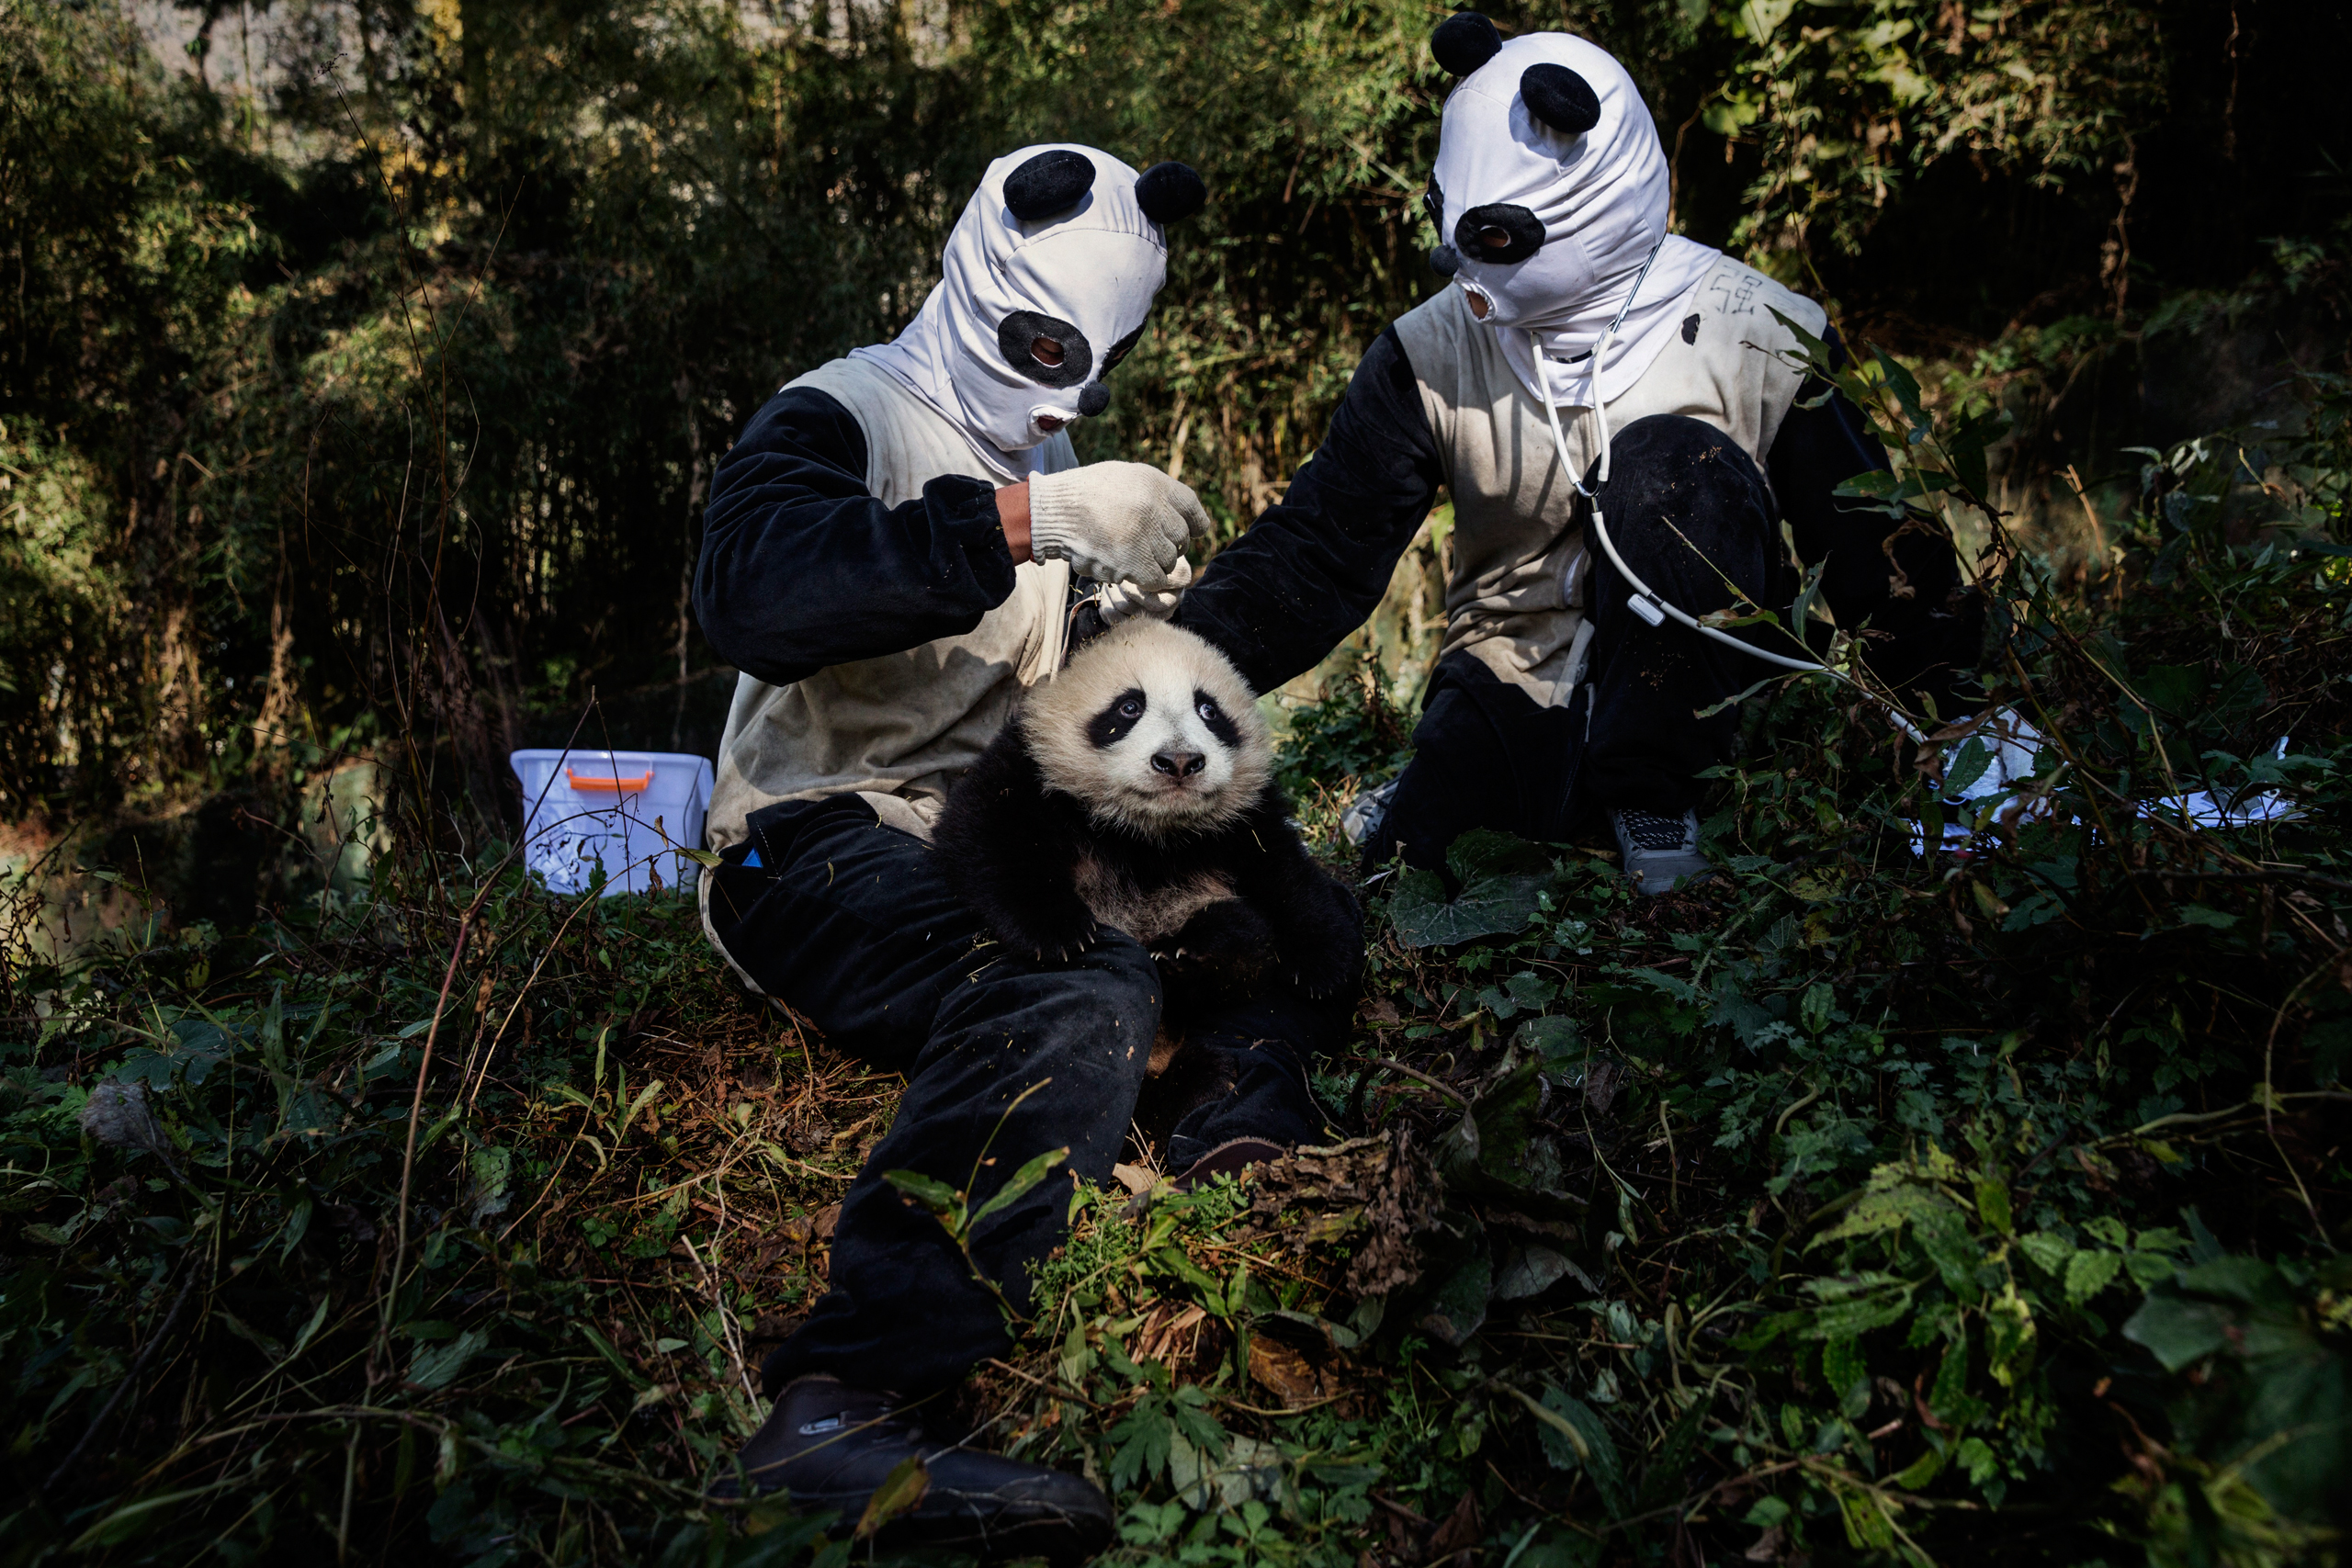 pandas-population-grows-diplomacy